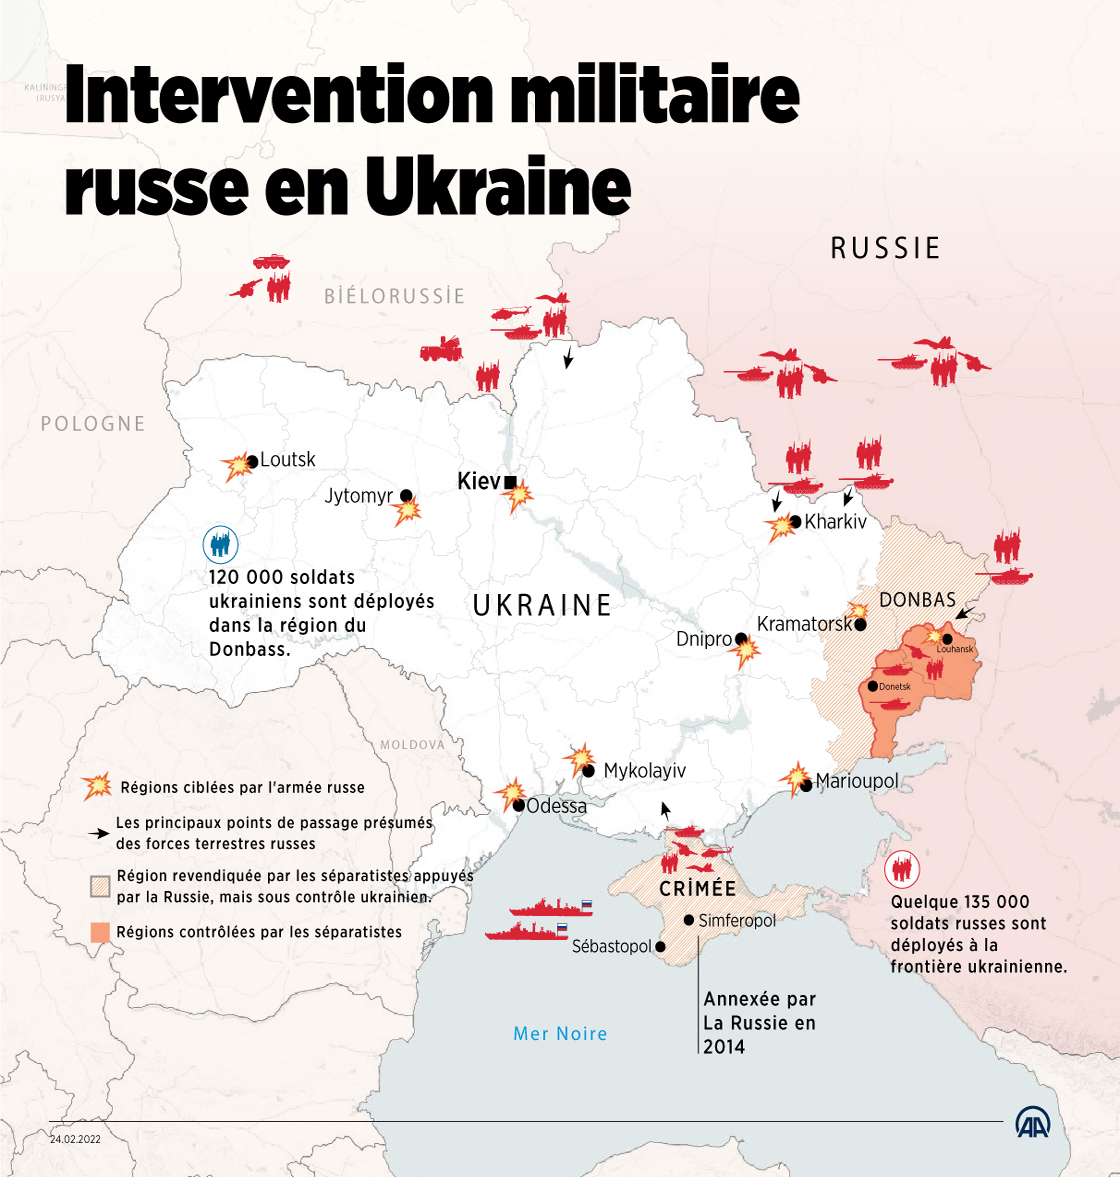 L'intervention russe cible des villes dans tout le territoire ukrainien